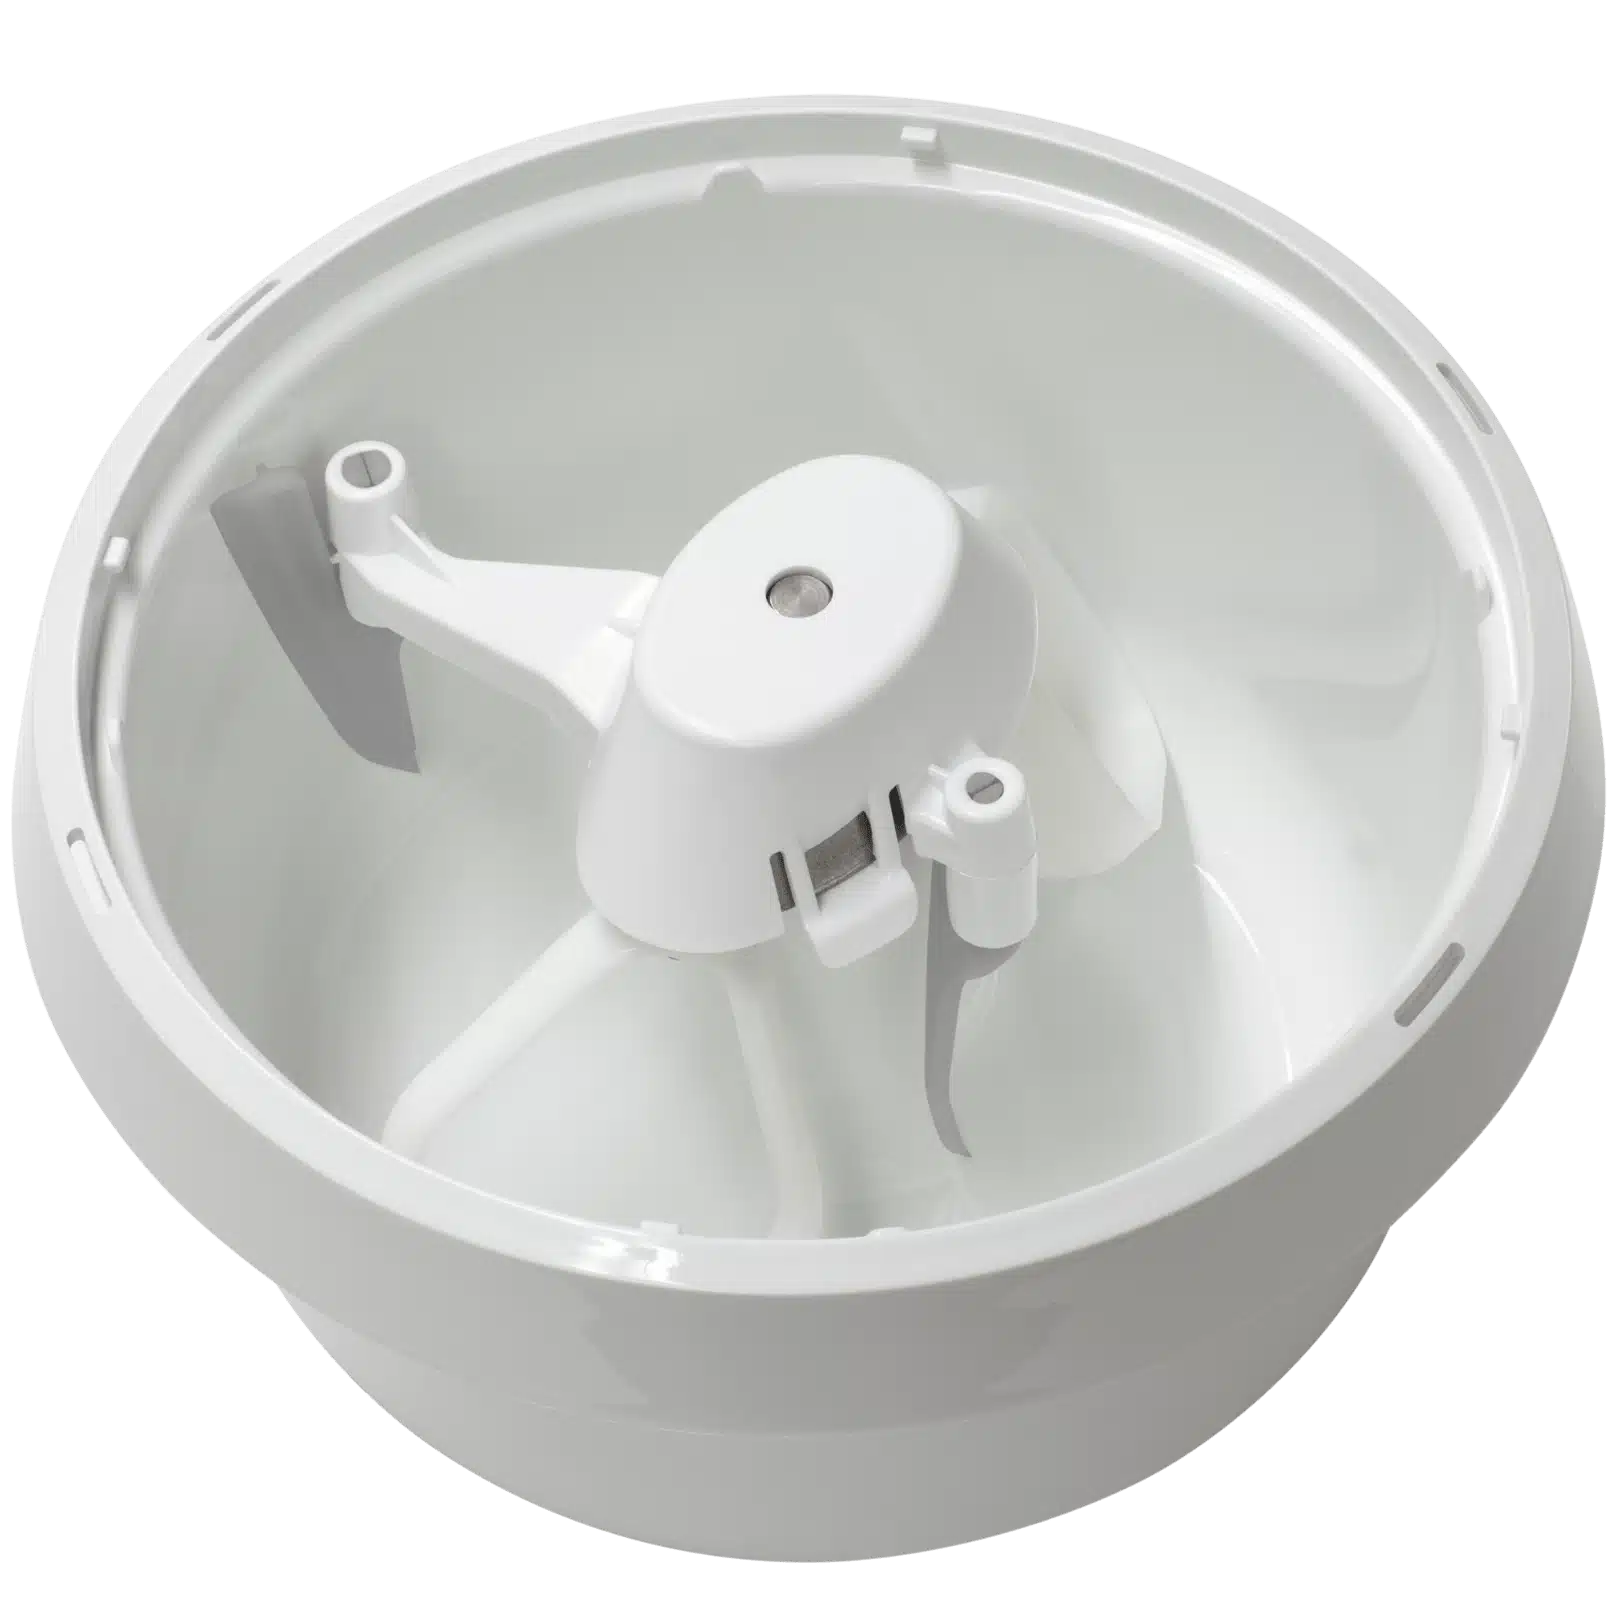 Nutrimill Bowl Scraper Attachment for Bosch Mixer MUZ6BS1